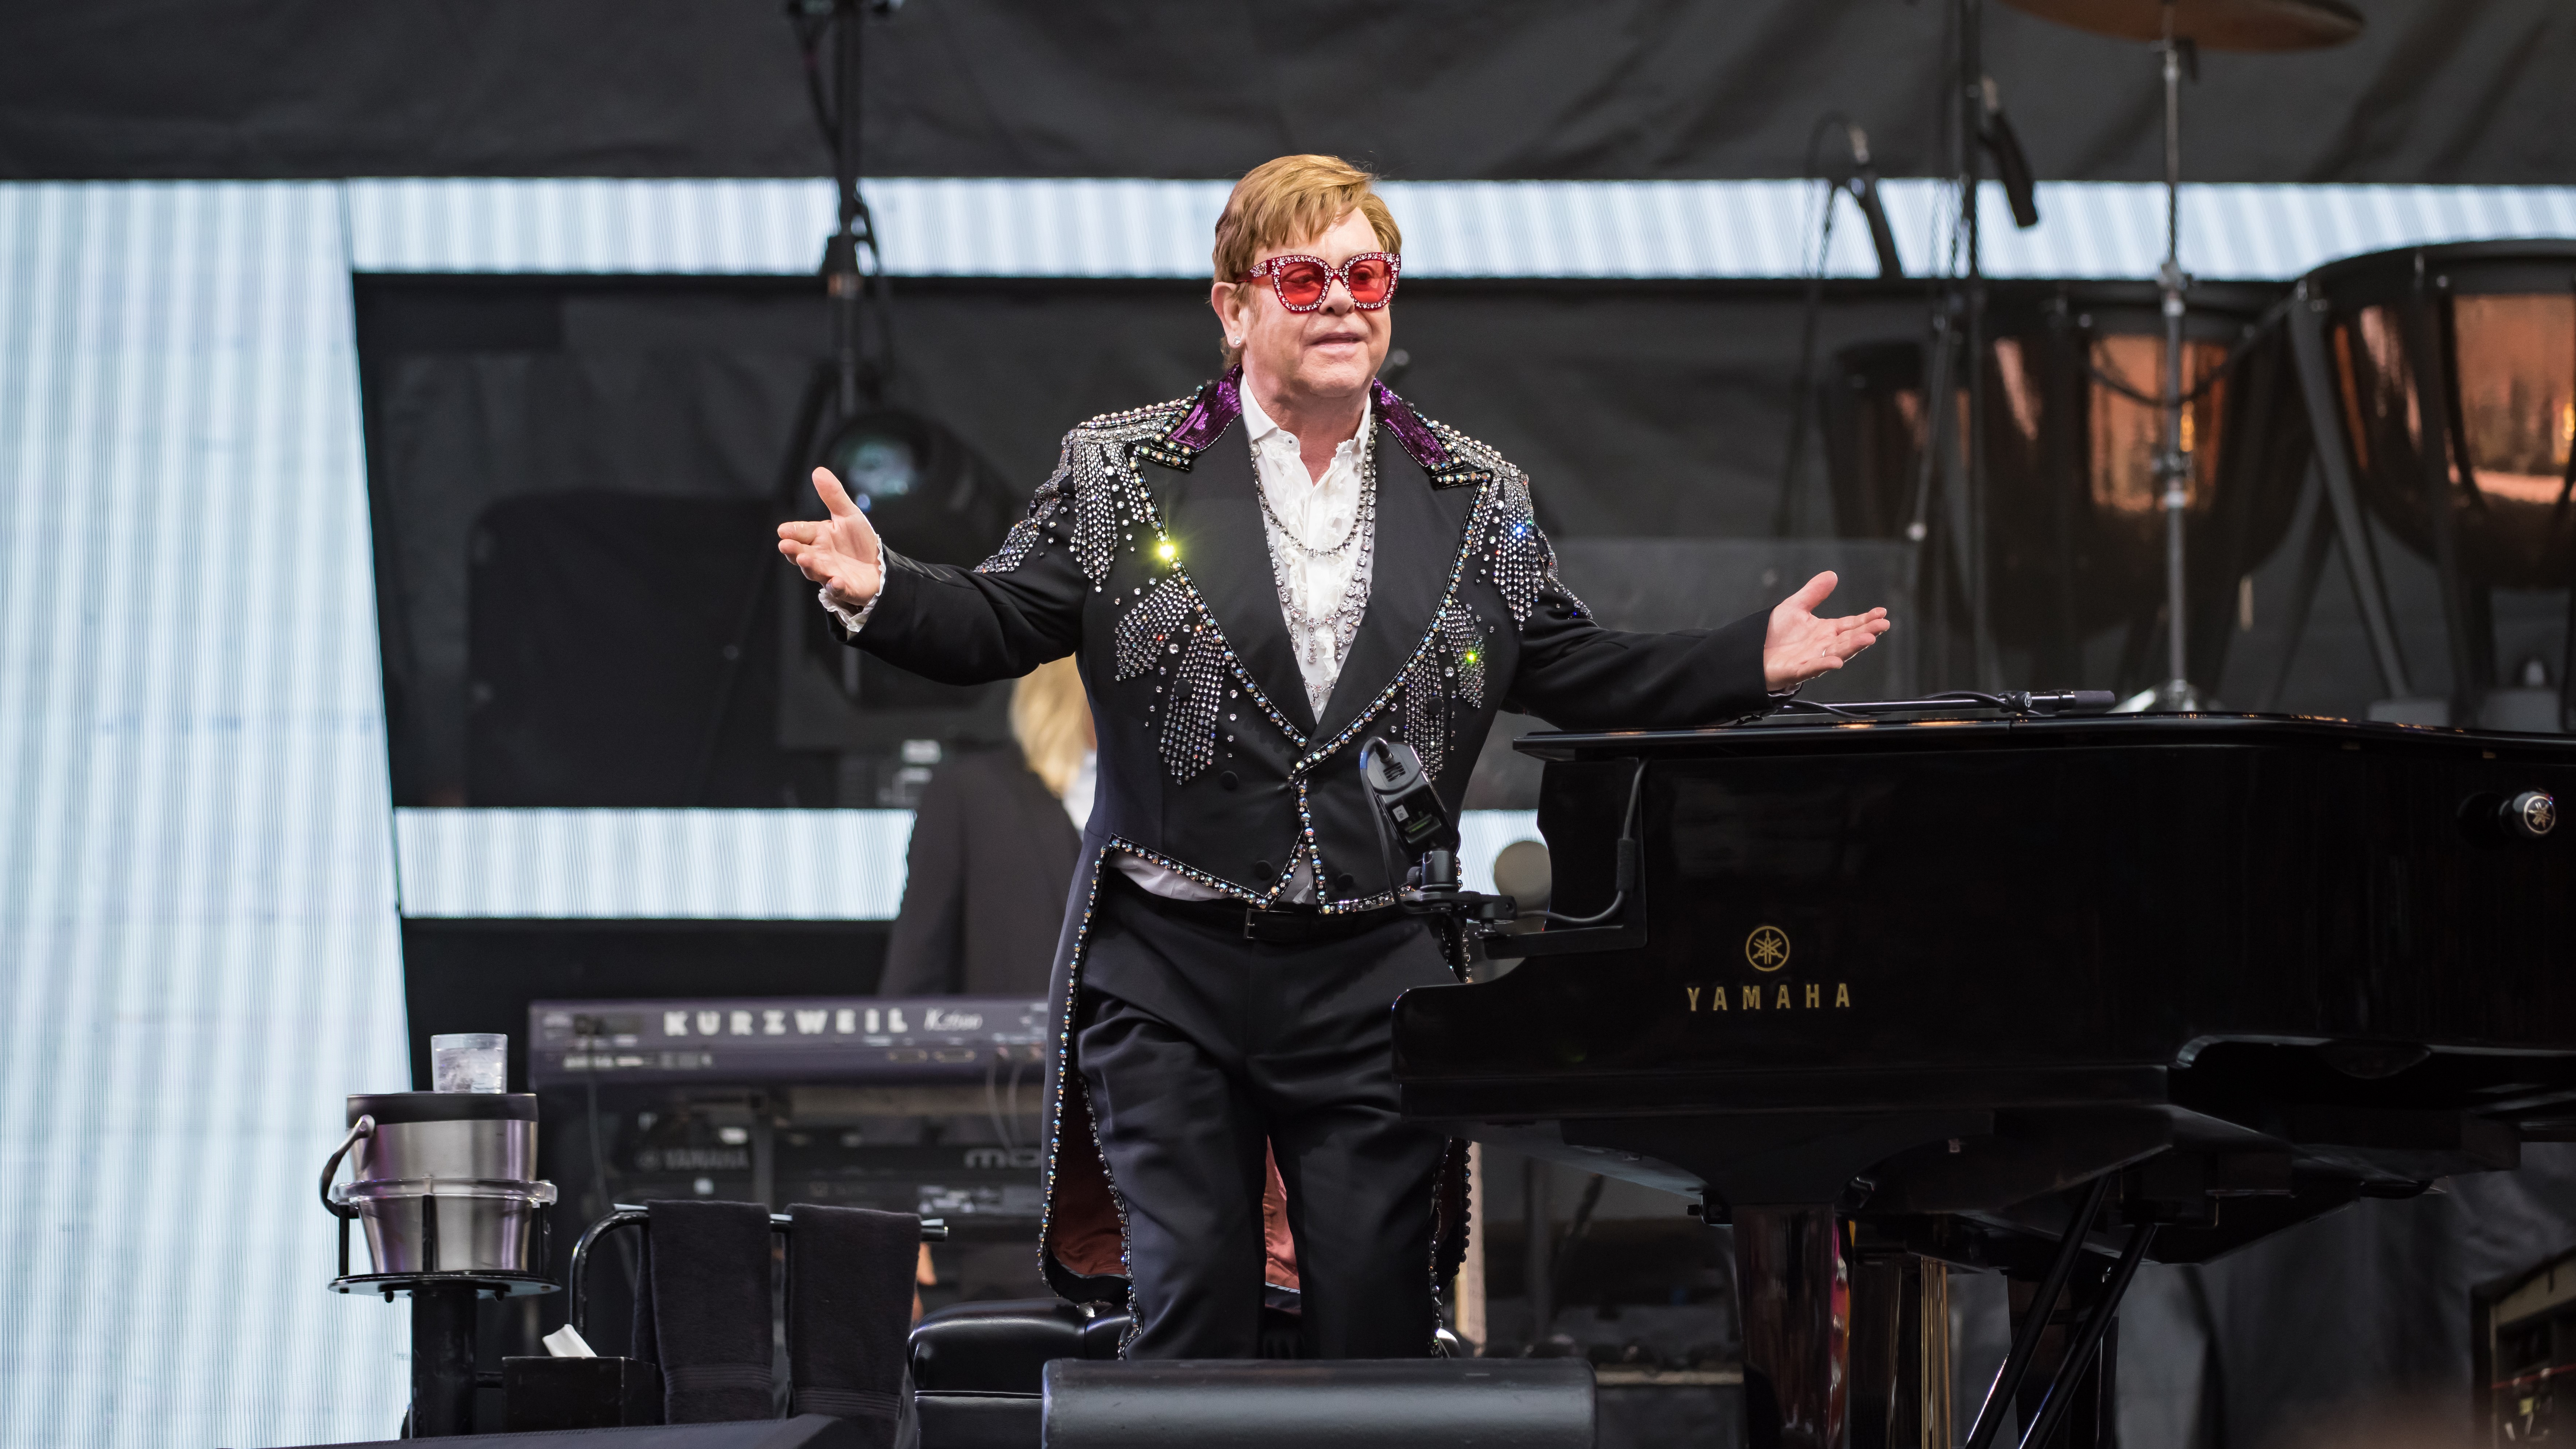 Elton John concert